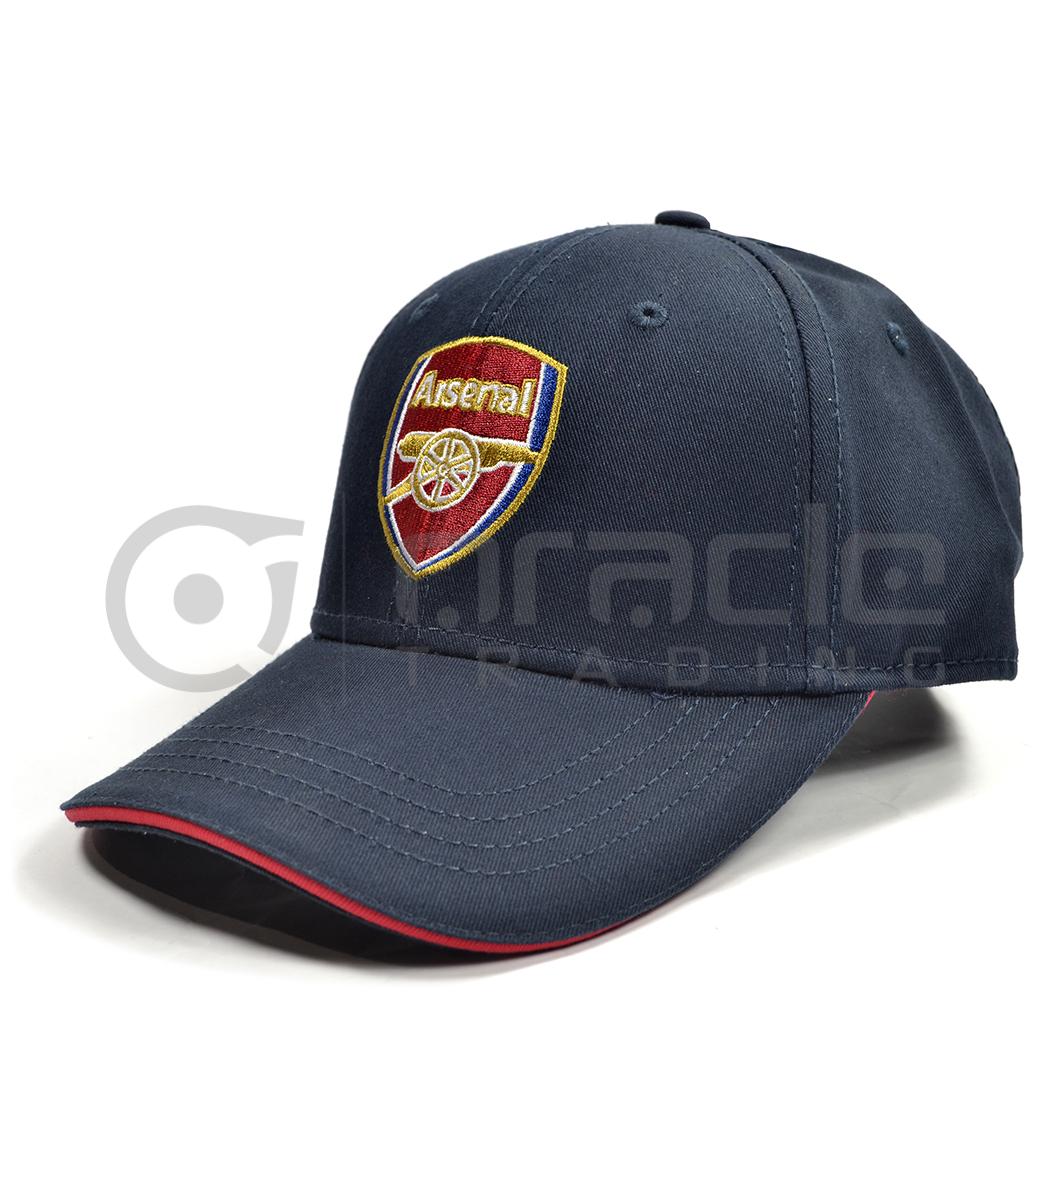 Arsenal Navy Crest Hat